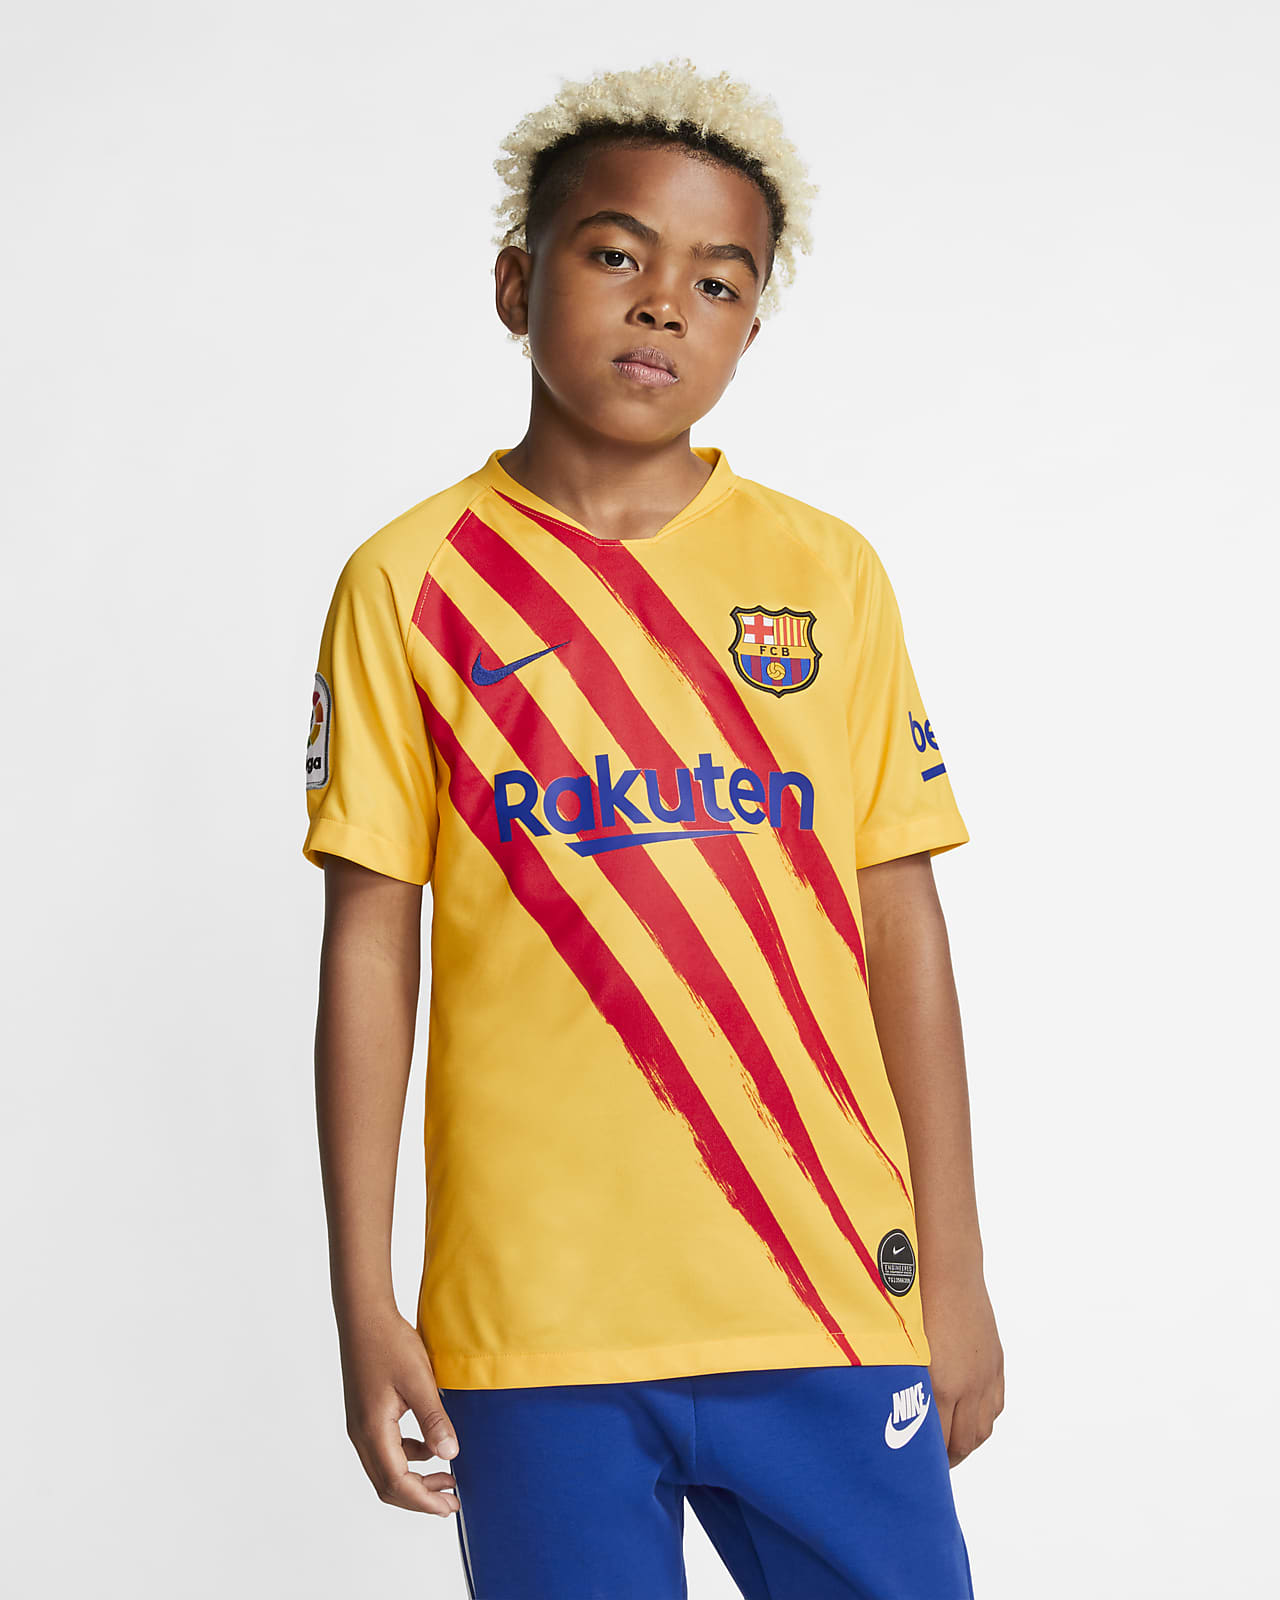 Begeleiden Bedienen getrouwd FC Barcelona Stadium Vierde Voetbalshirt voor kids. Nike NL